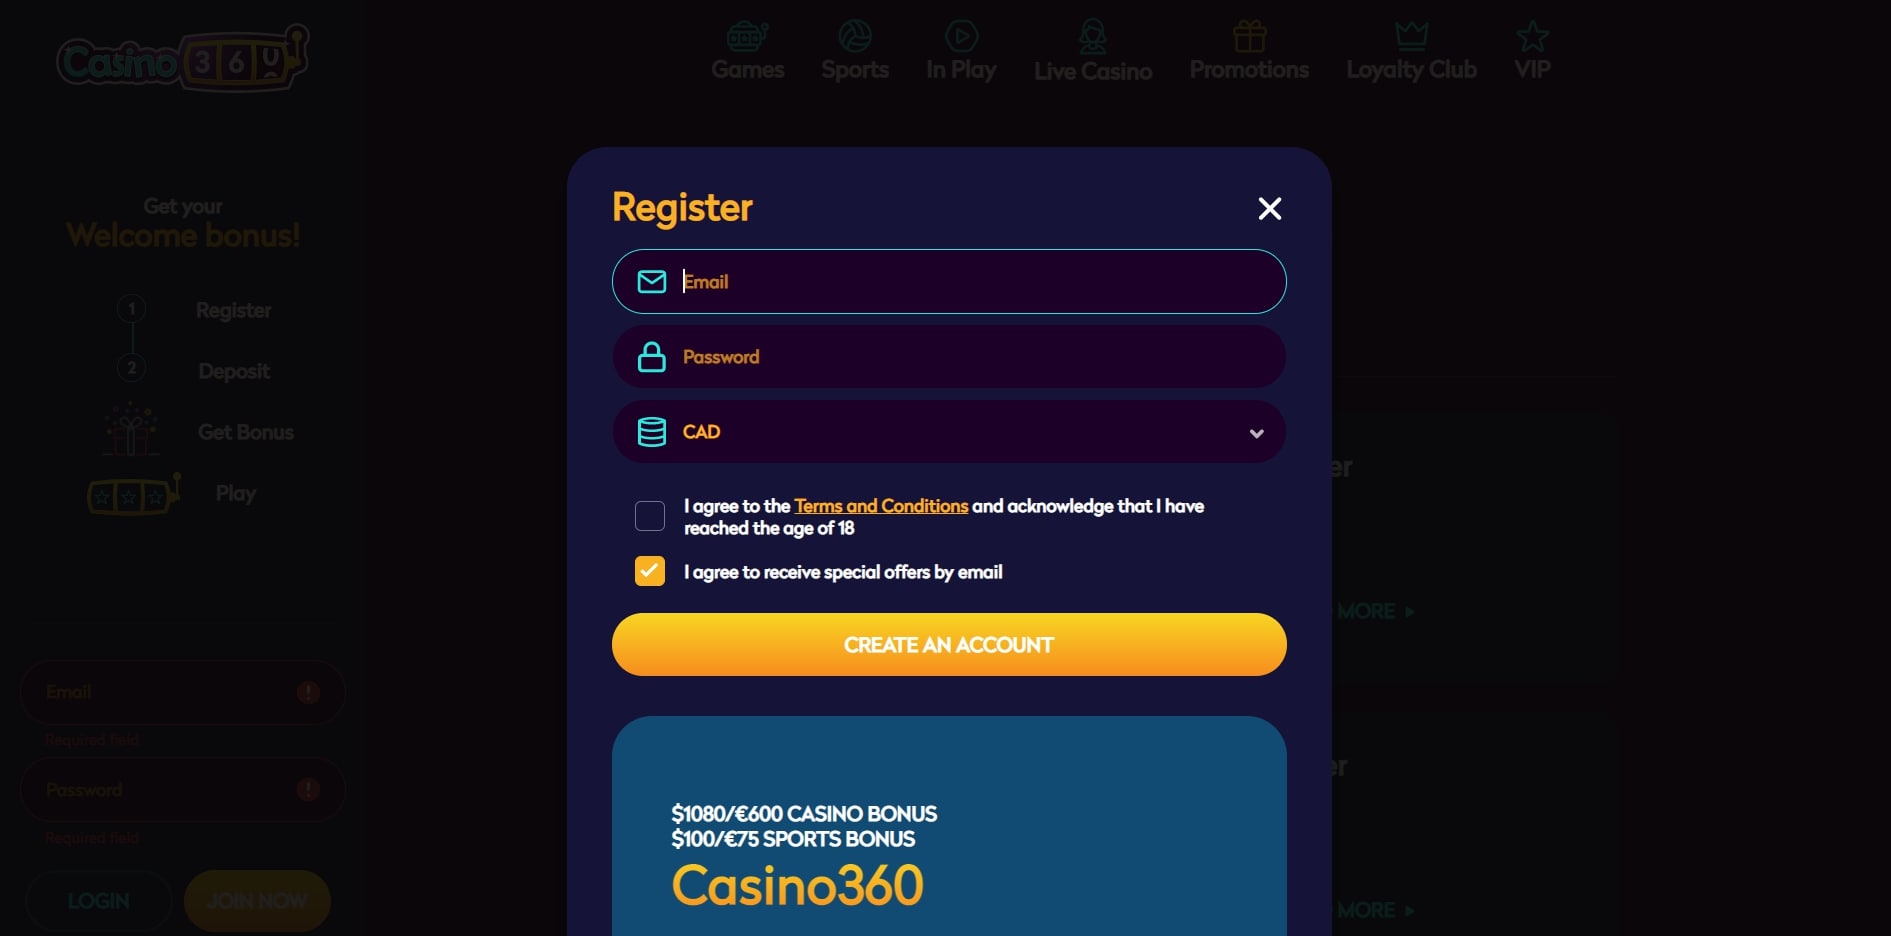 Casino360 Login